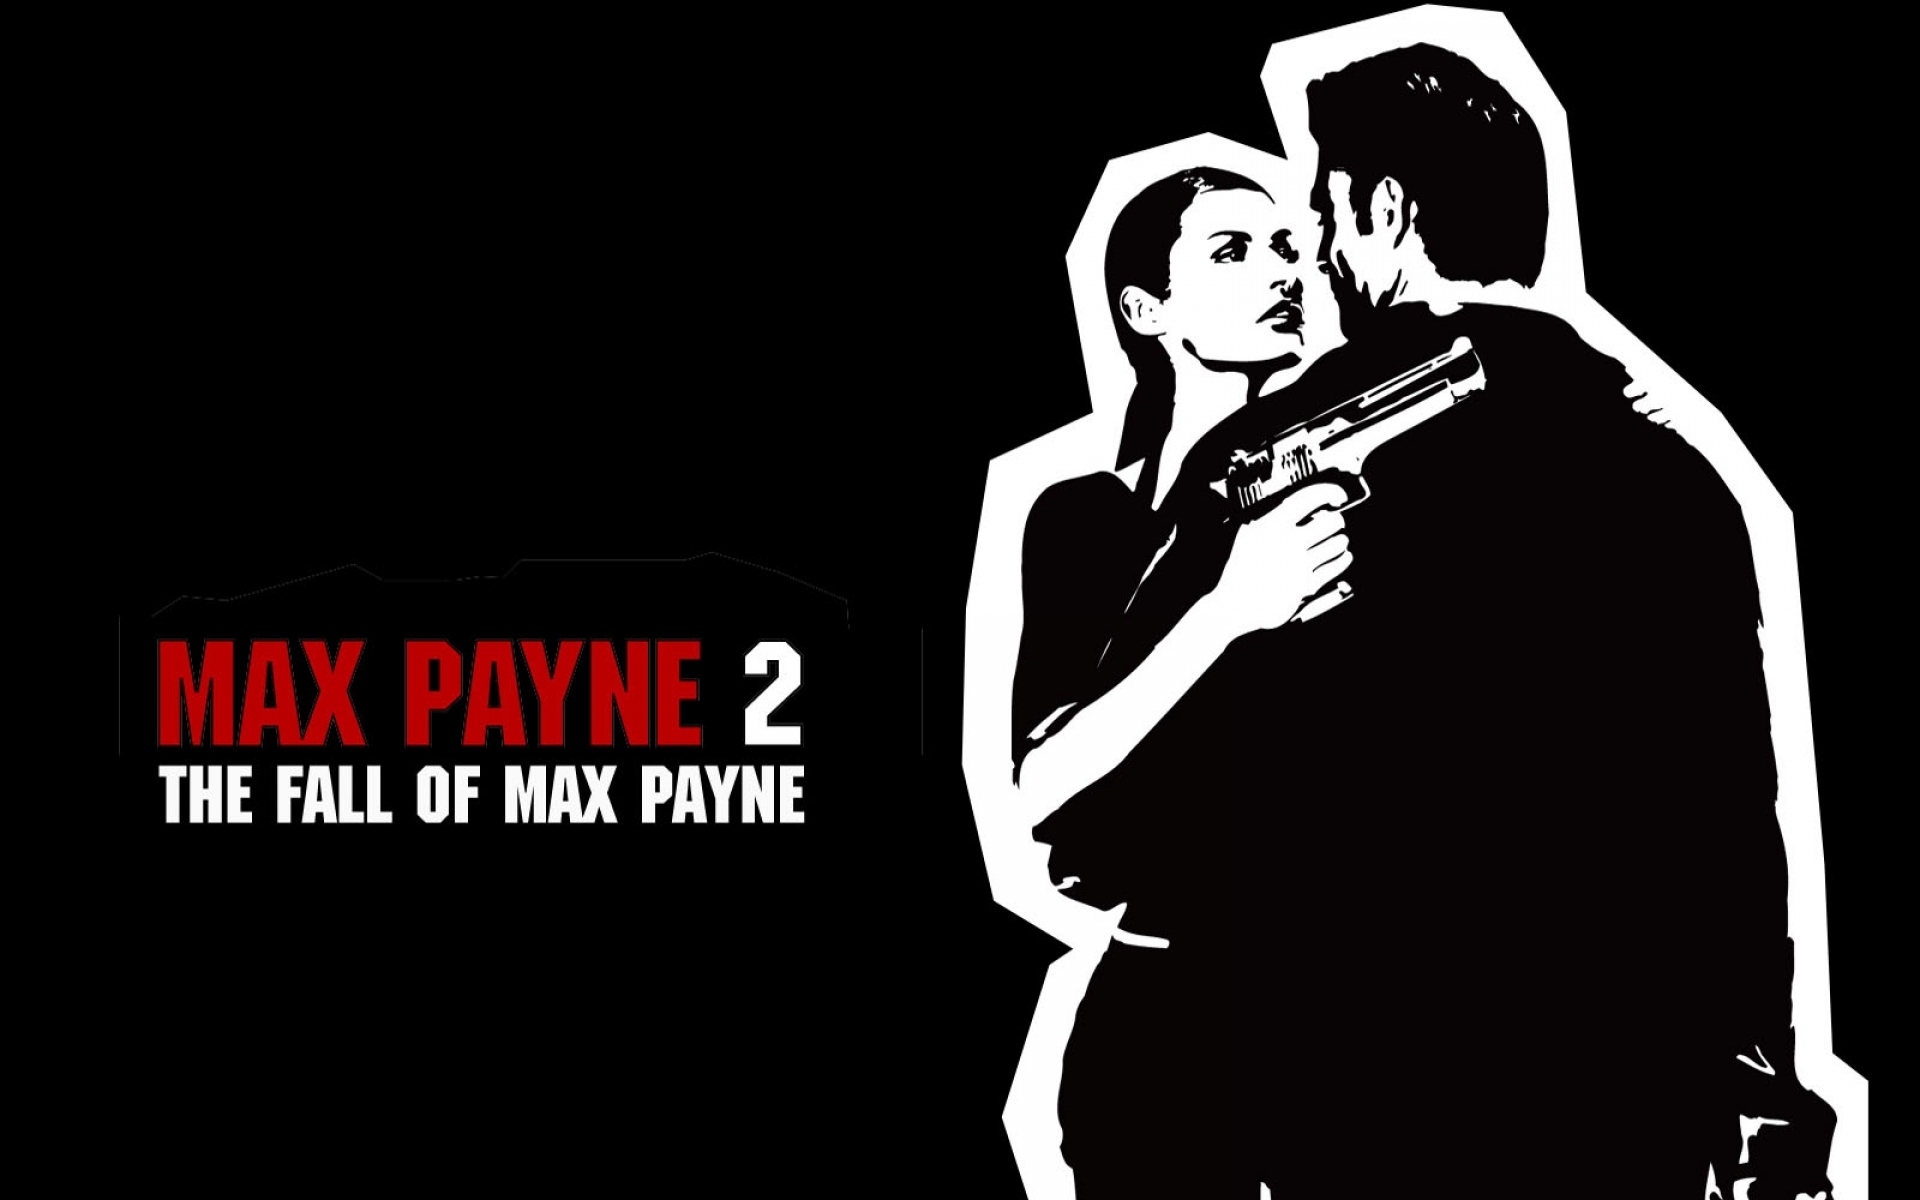 Картинки Max payne 2, падение максимальной заработной платы, женщины, пистолеты, спина, фан-арт фото и обои на рабочий стол